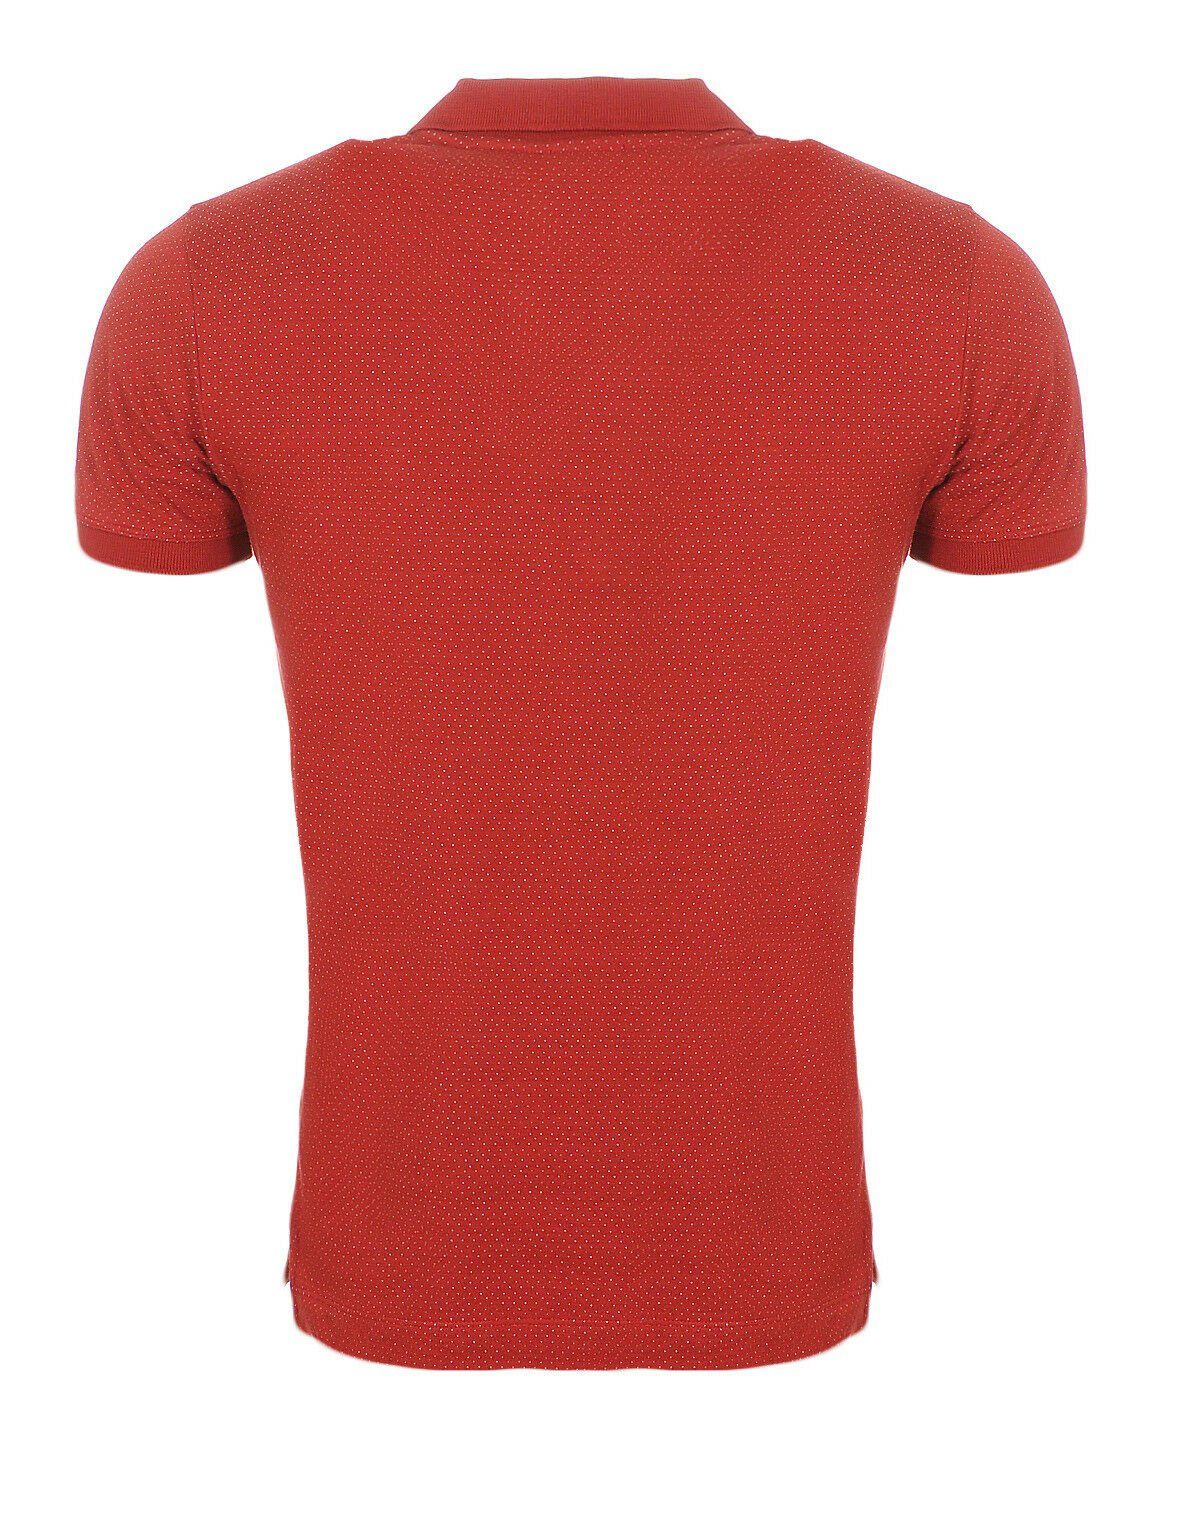 Diesel Poloshirt Diesel Herren Muster bepunktet mit Poloshirt Oberfläche Rot Punkte, Rundhalsausschnitt, unifarben, Brustbereich, im T-KALAR-DOTS Labelstitching